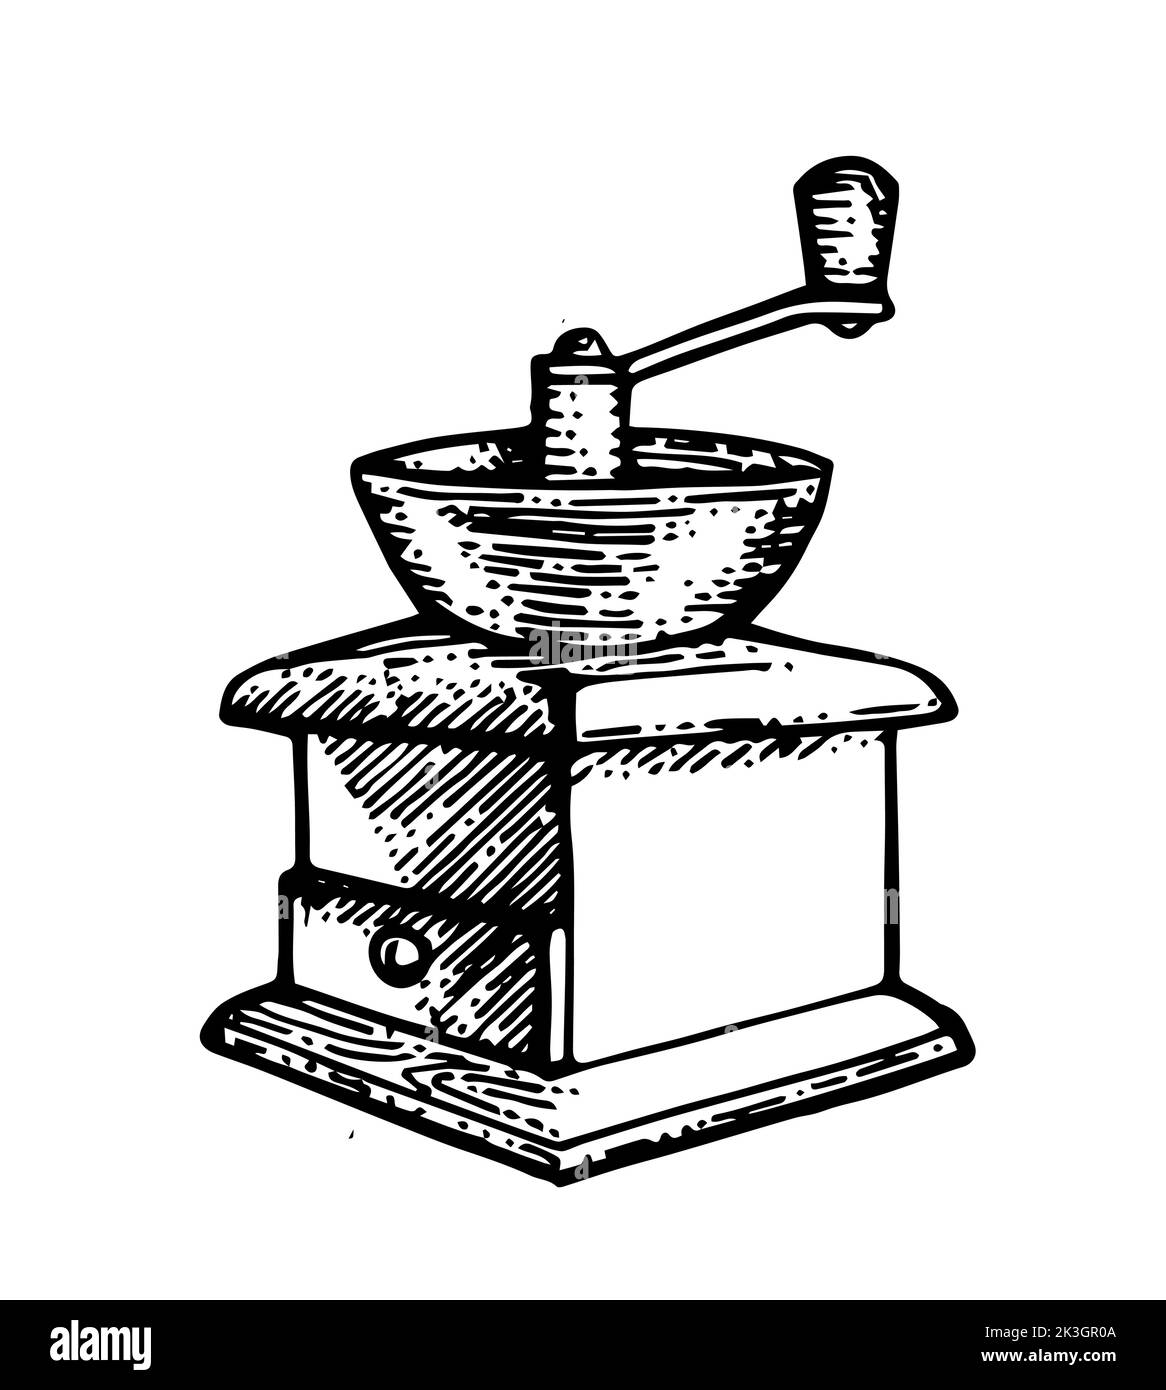 Manuelle Mühle für die Herstellung von Mehl und gemahlenem Kaffee. Veraltete alte Retro-Technologie. Zu Pulver mahlen. Handgezeichnete Umrissskizze. Isoliert auf Weiß Stock Vektor